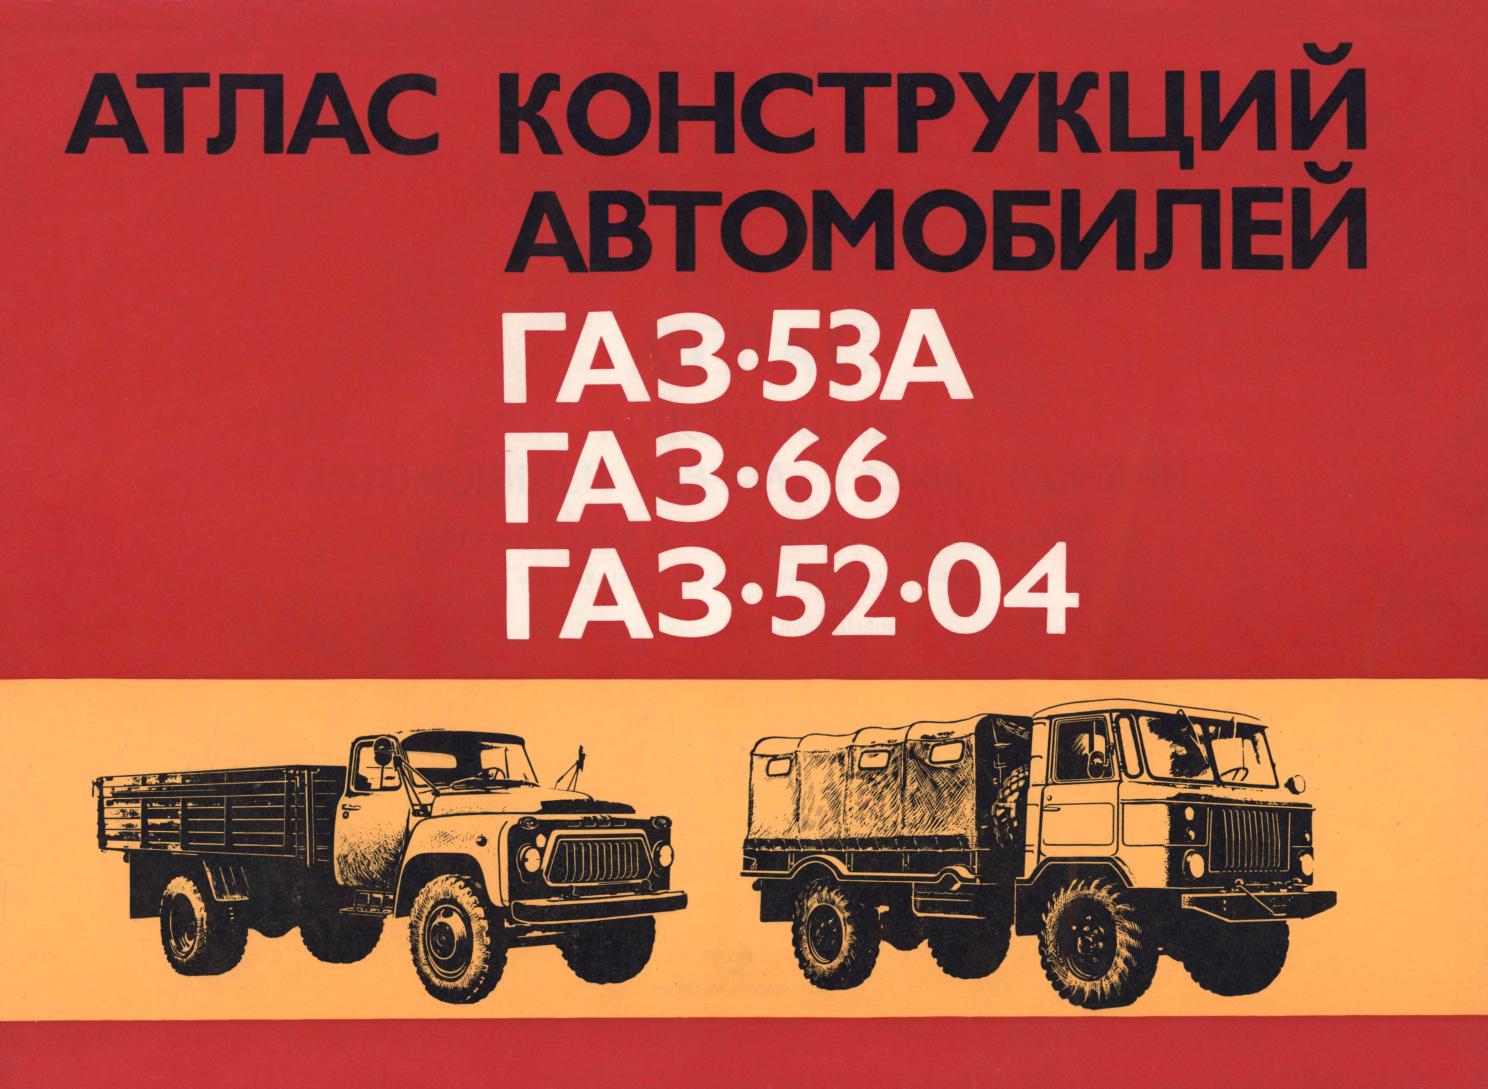 Атлас конструкций автомобилей ГАЗ-53А, ГАЗ-66, ГАЗ-52-04. Часть 1. Шасси (начало) - 1979_01.jpg